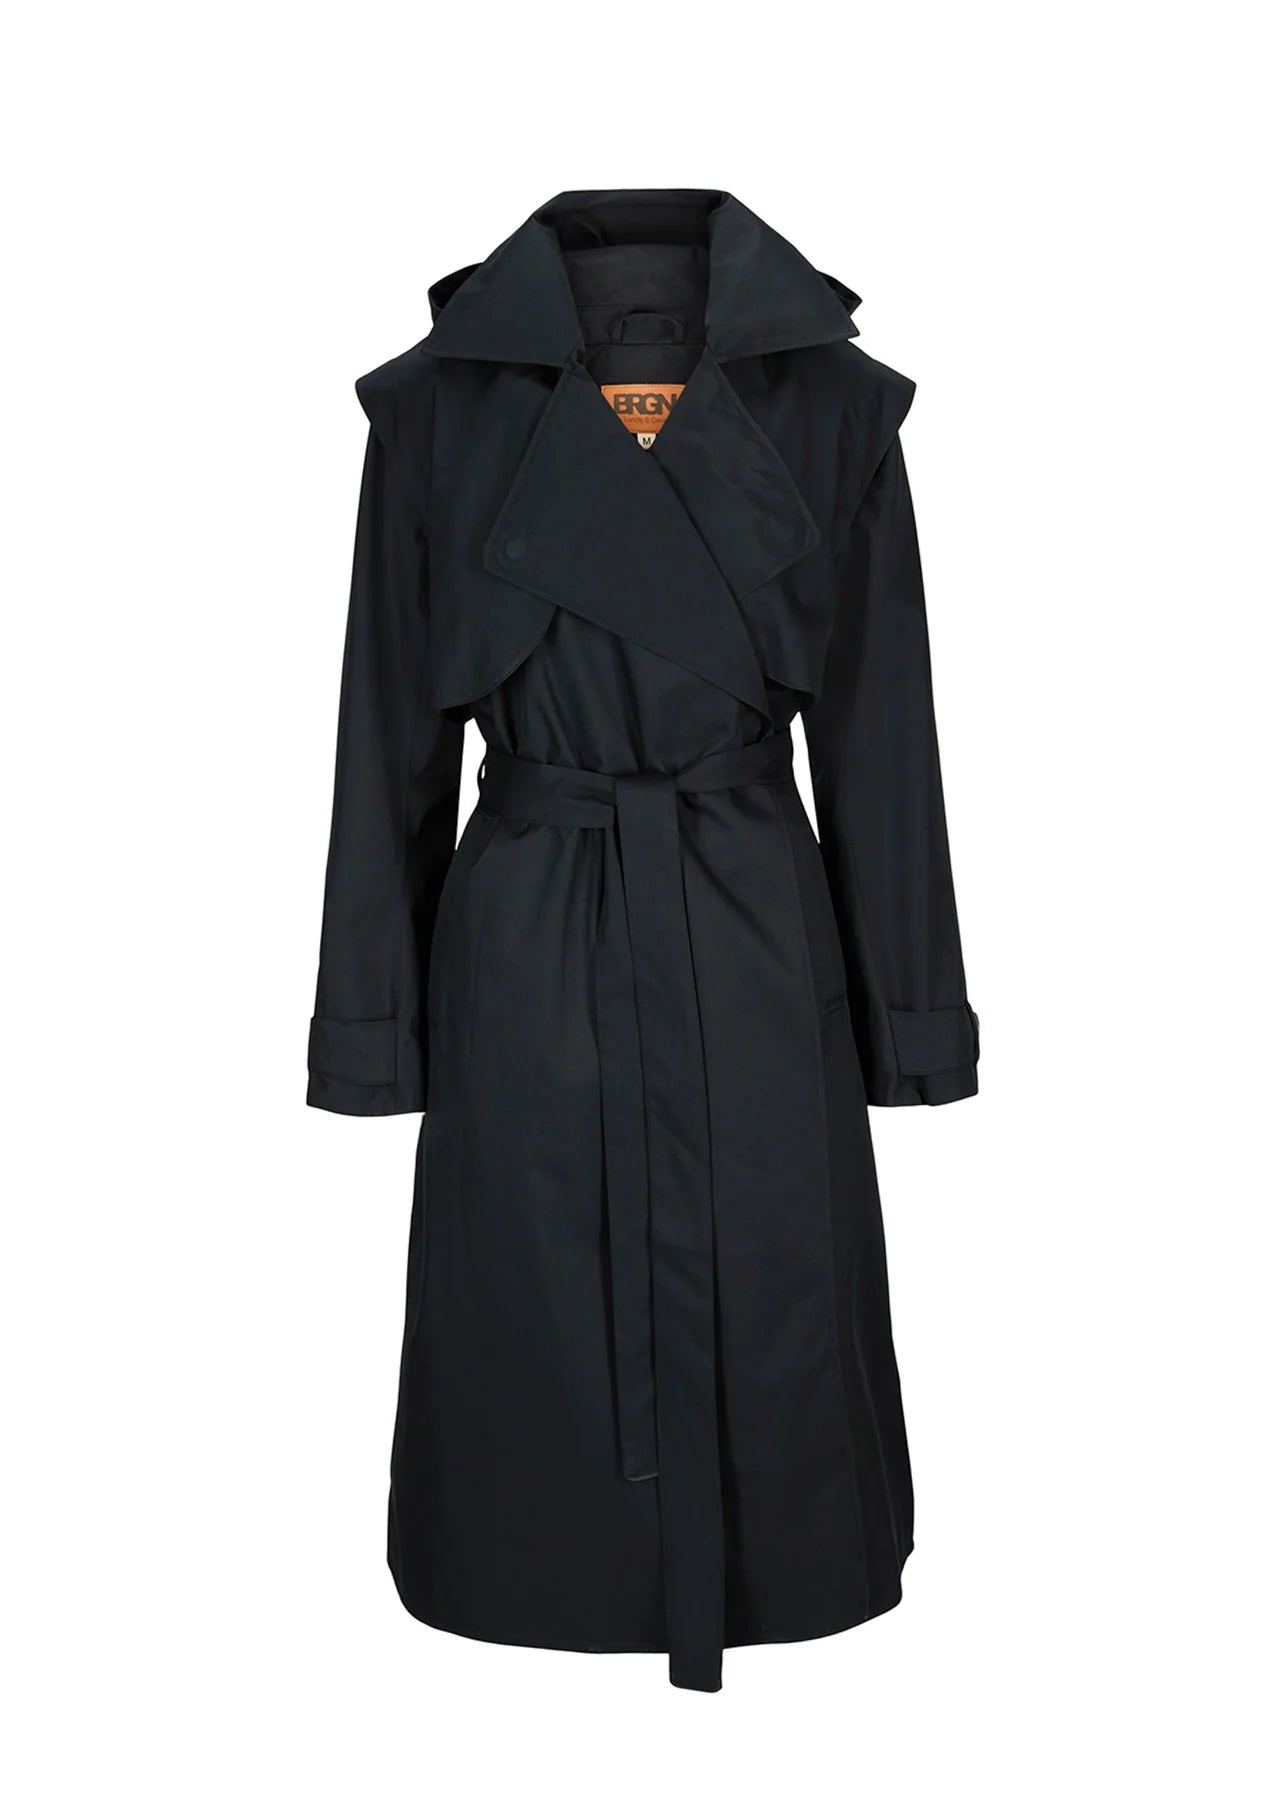 Regndrape dark navy waterproof trench coat